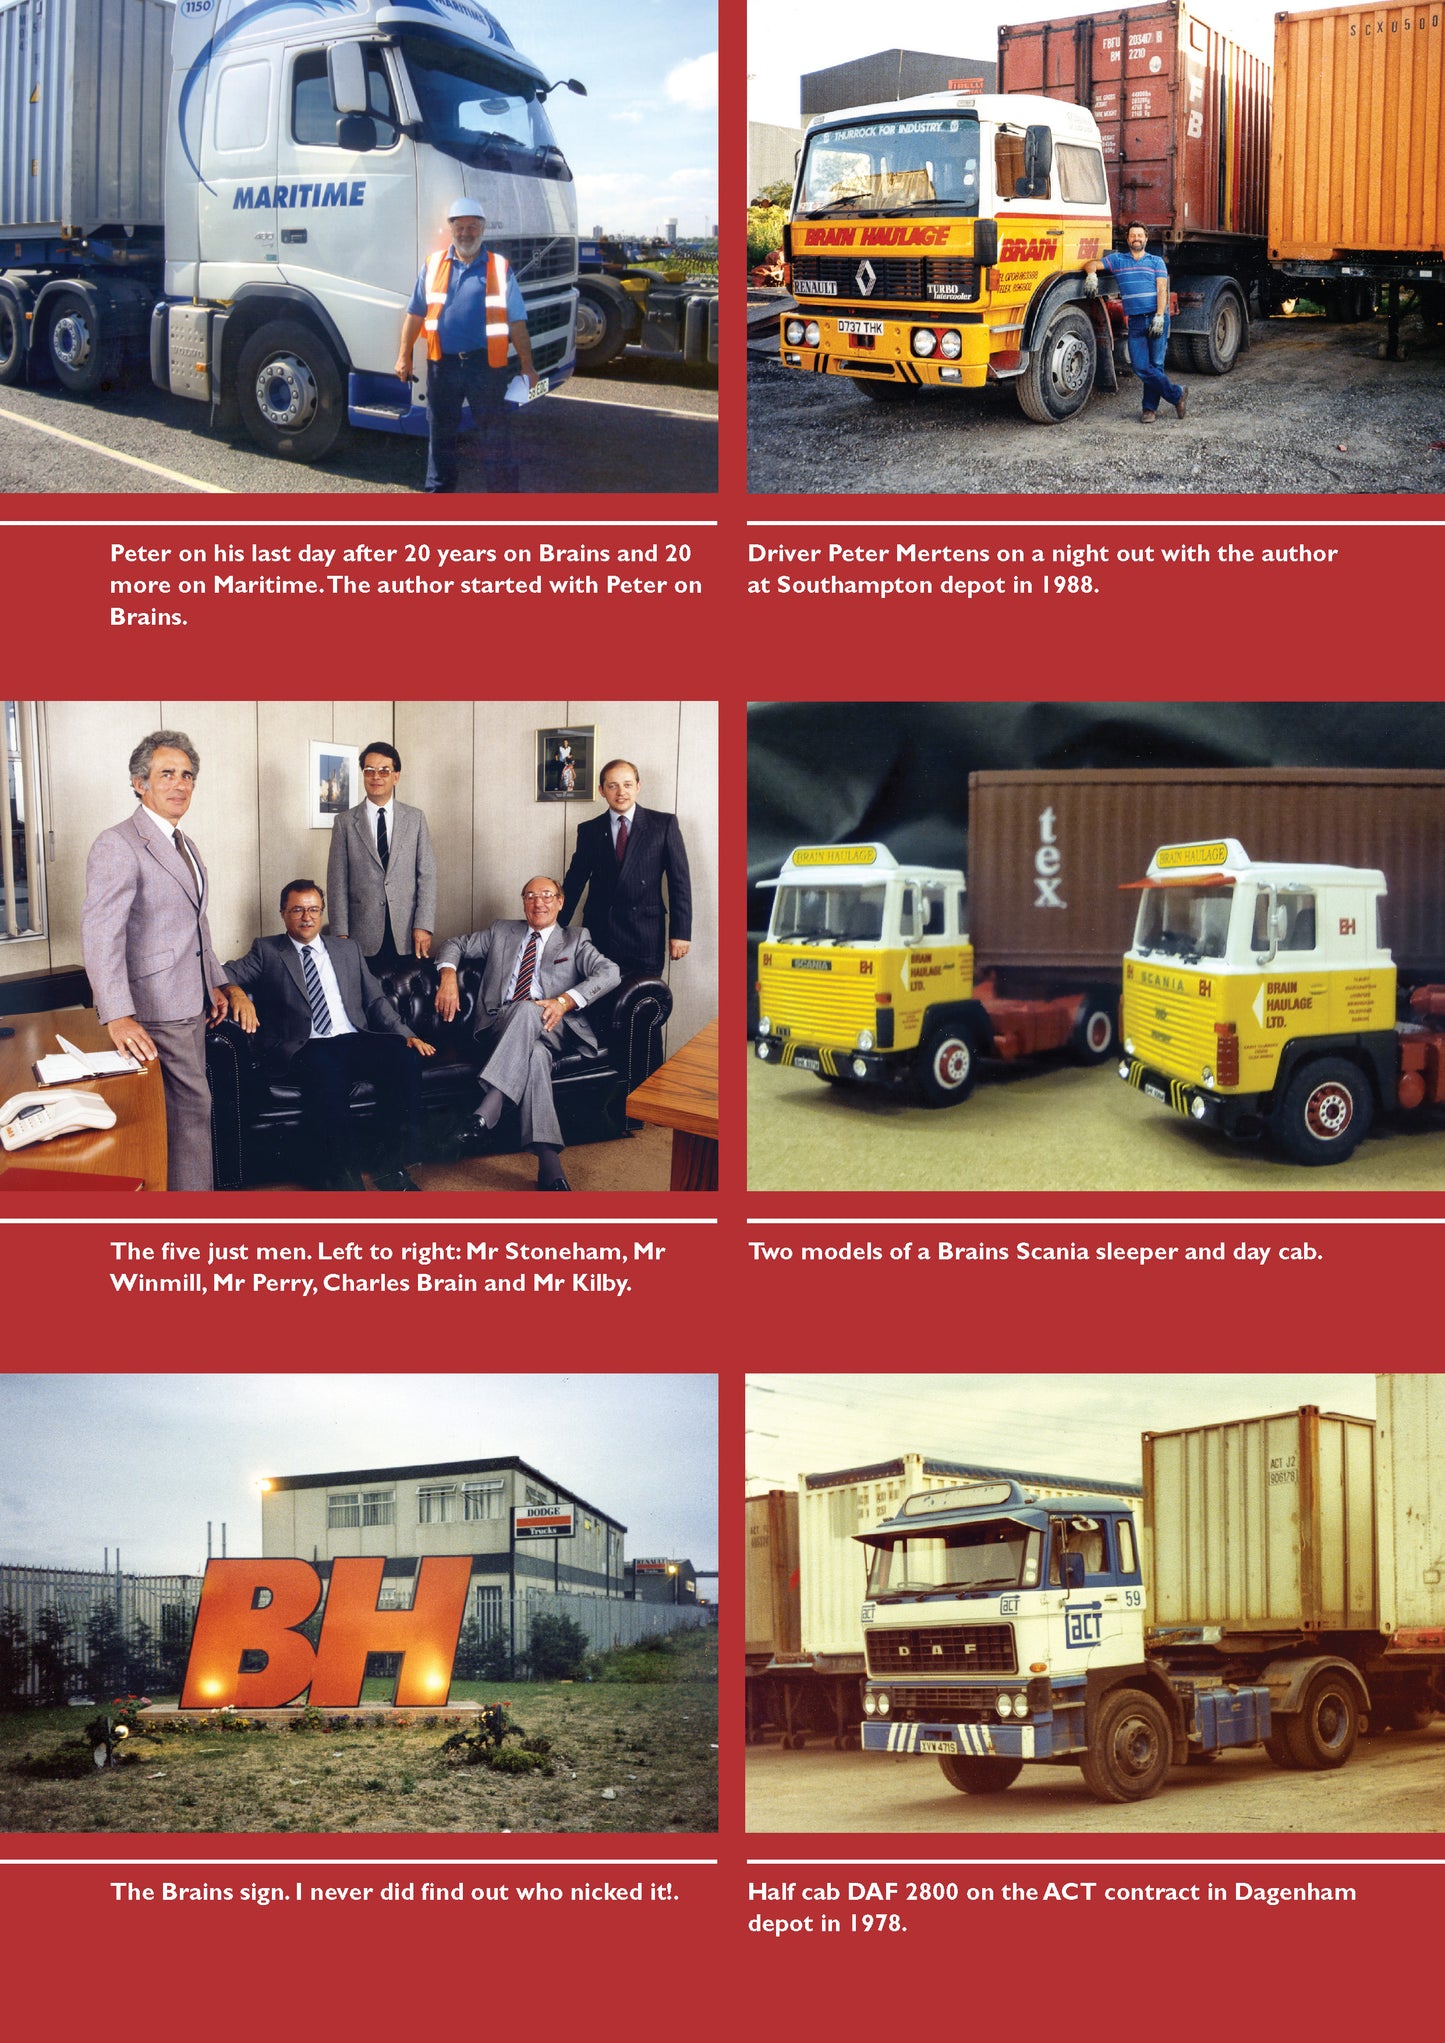 Brain Haulage Ltd: A Company History 1950-1992